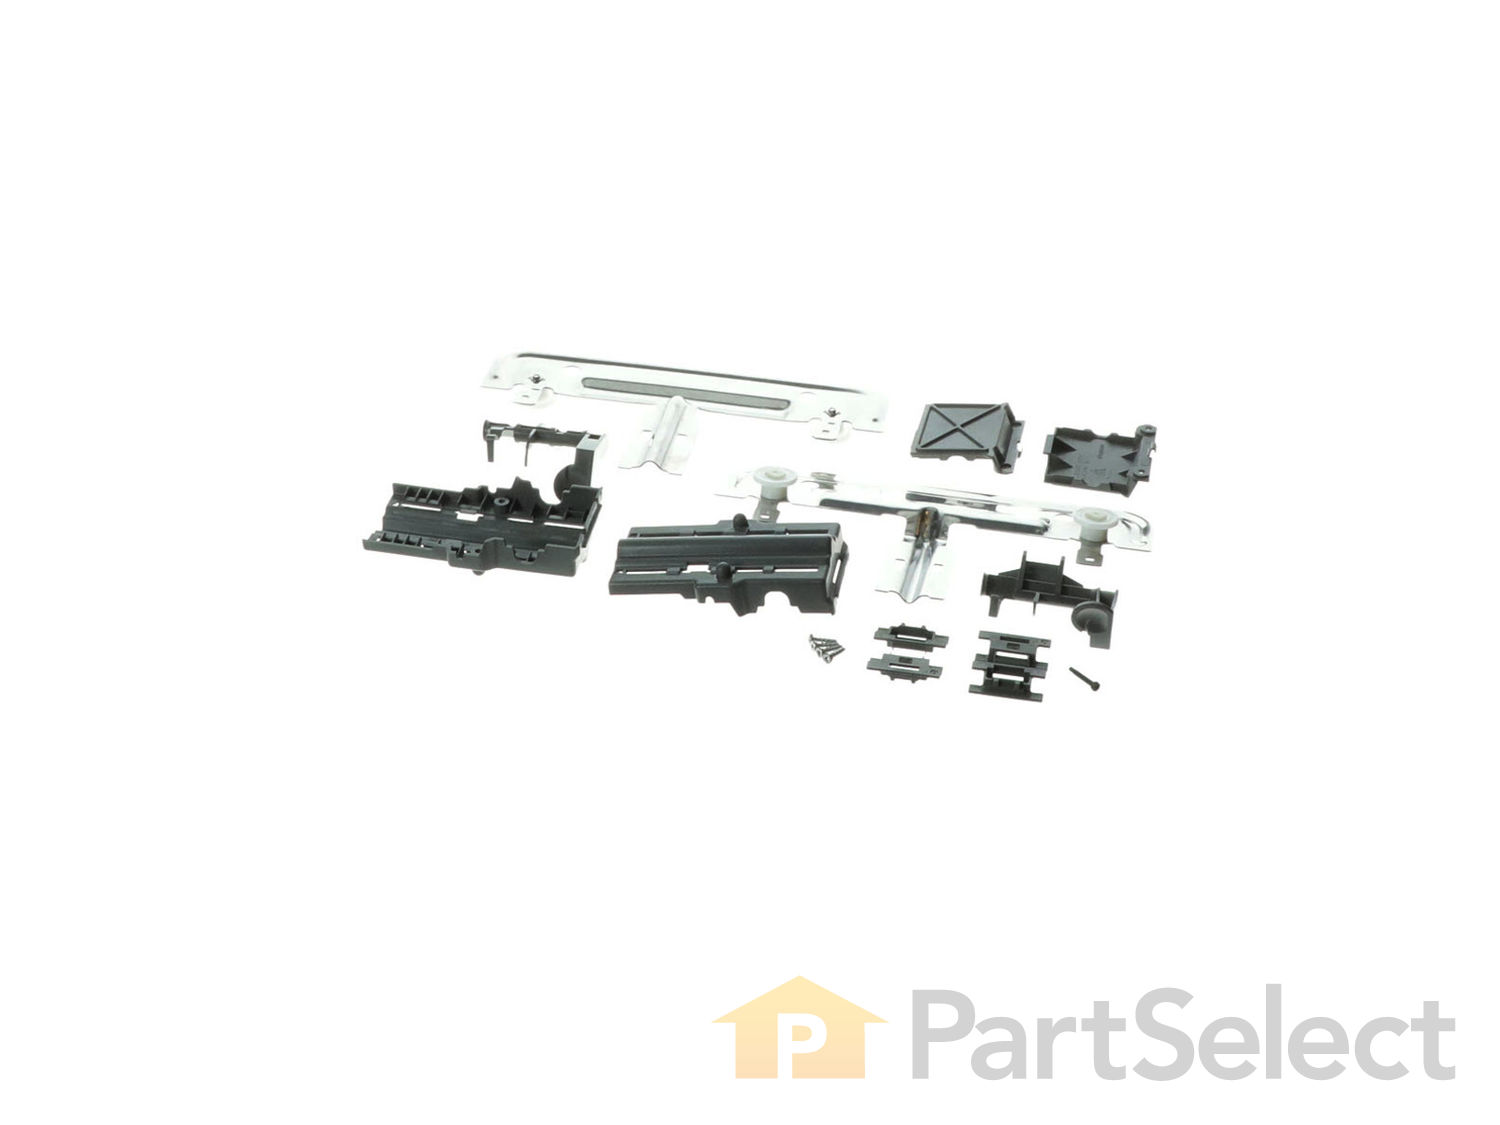 Siwdoy Upgraded 20 PCS W10712395 Dishwasher Rack Adjuster Metal Kit Compatible with Whirlpool Replace W10250159 W10350375 AP5957560 W10712395VP WPW10508950 